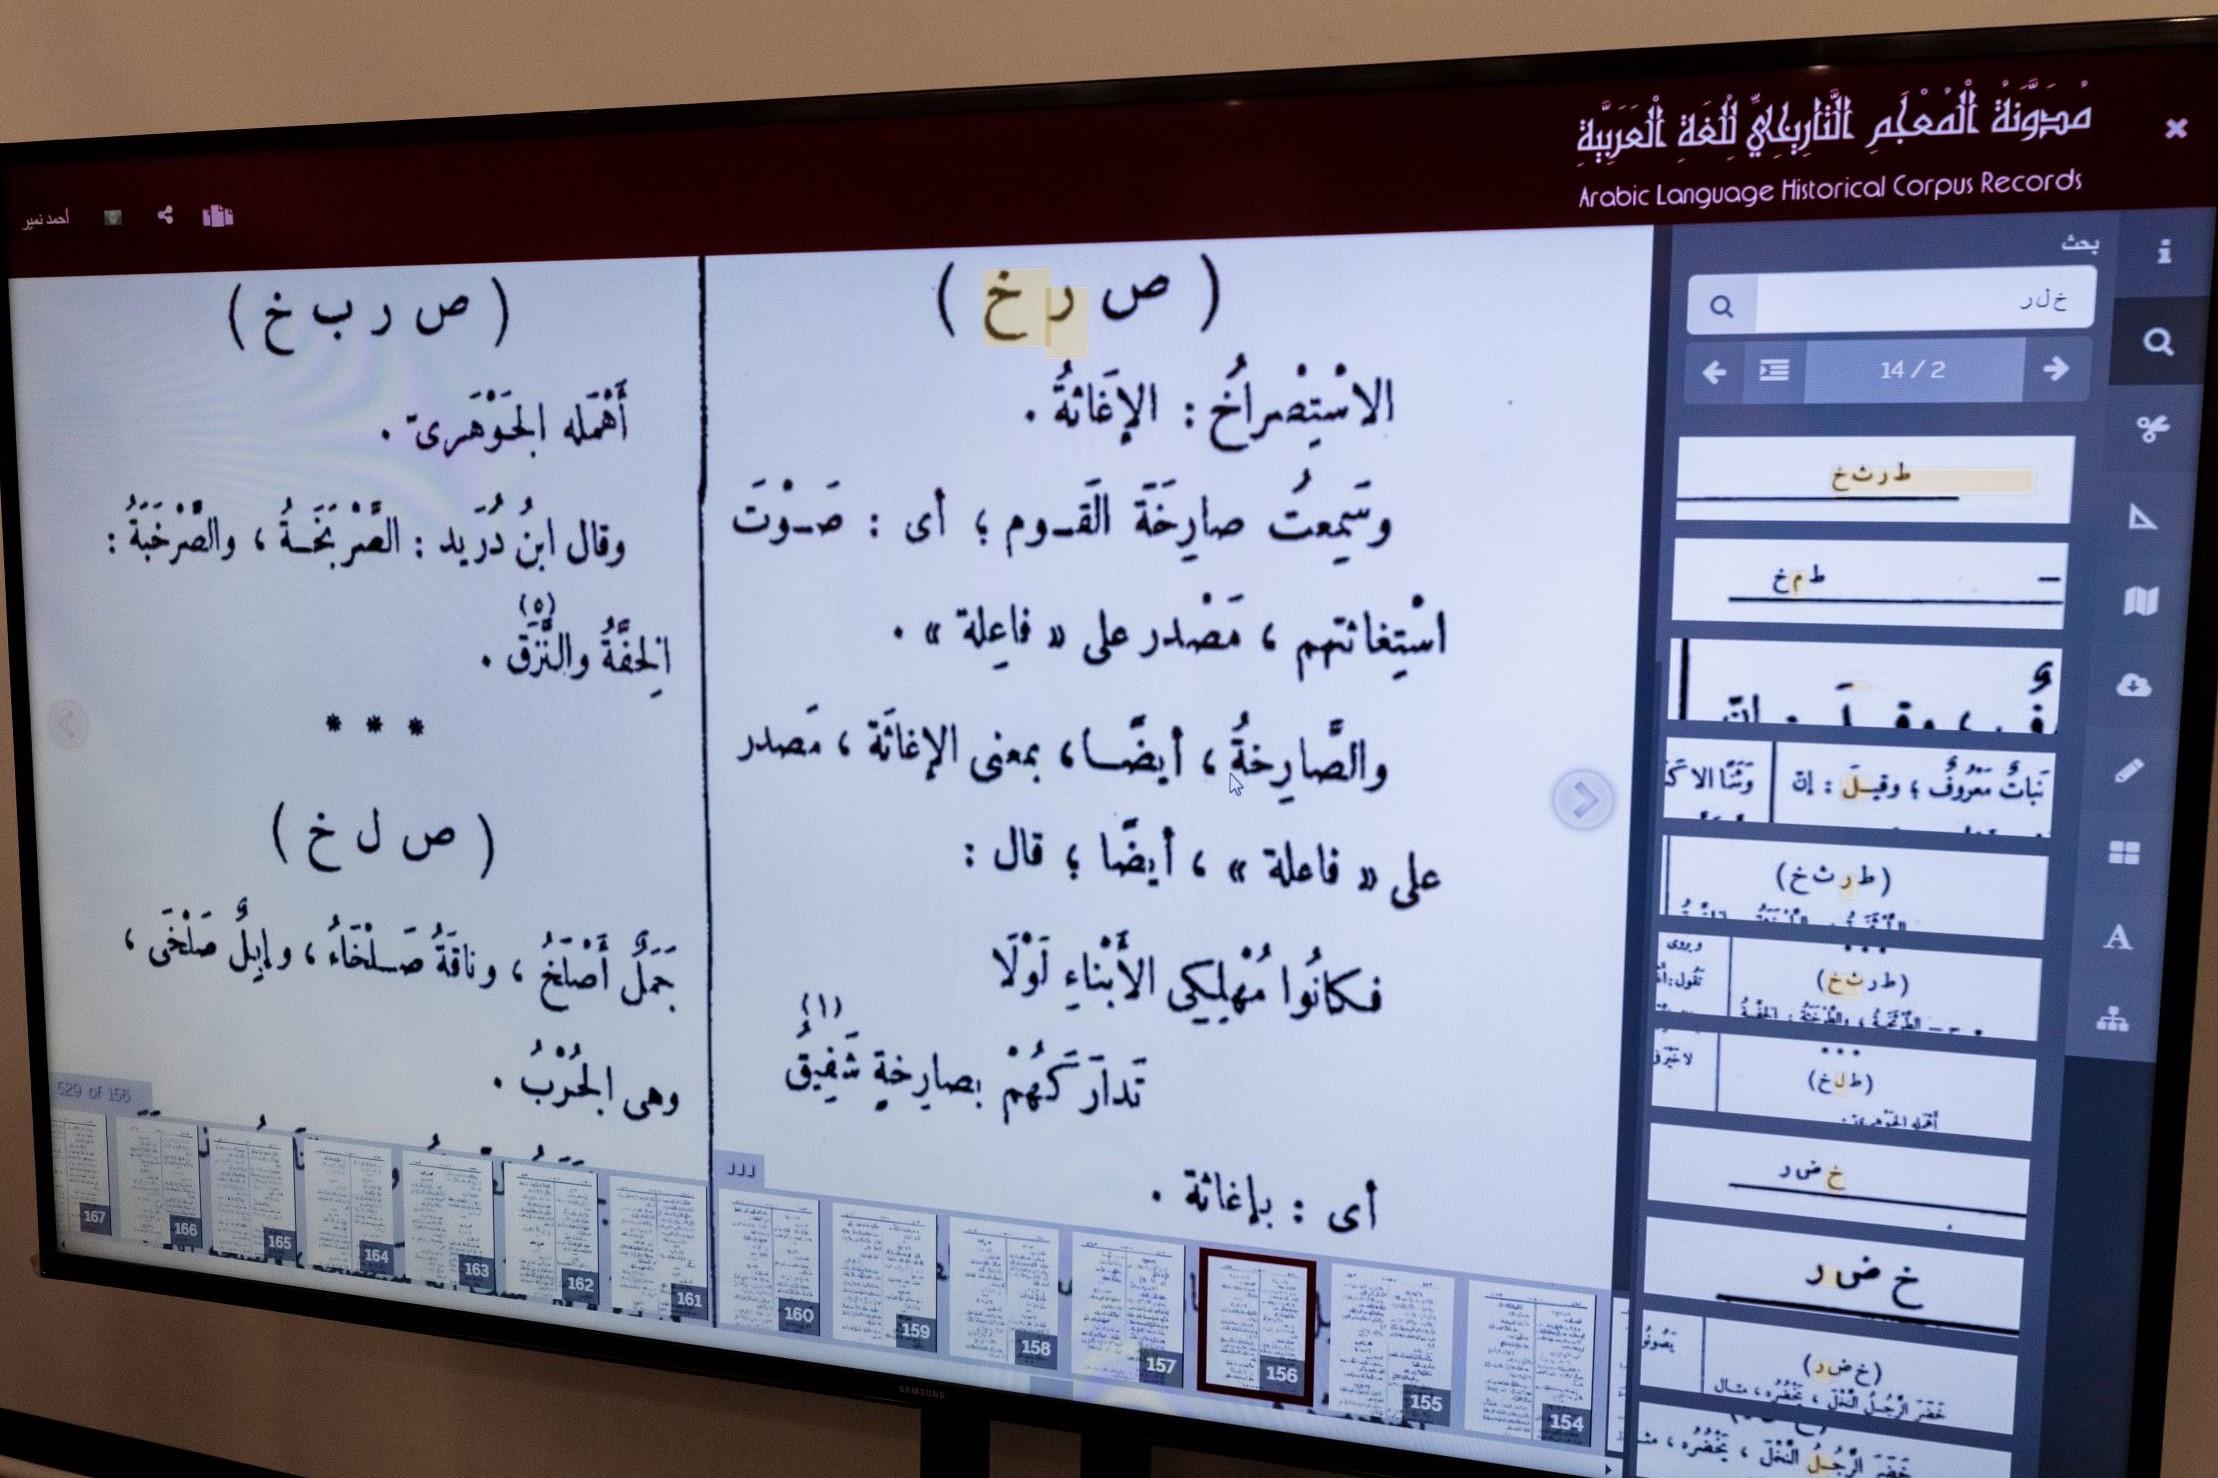 المنصة الرقمية لمشروع المعجم التاريخي للغة العربية